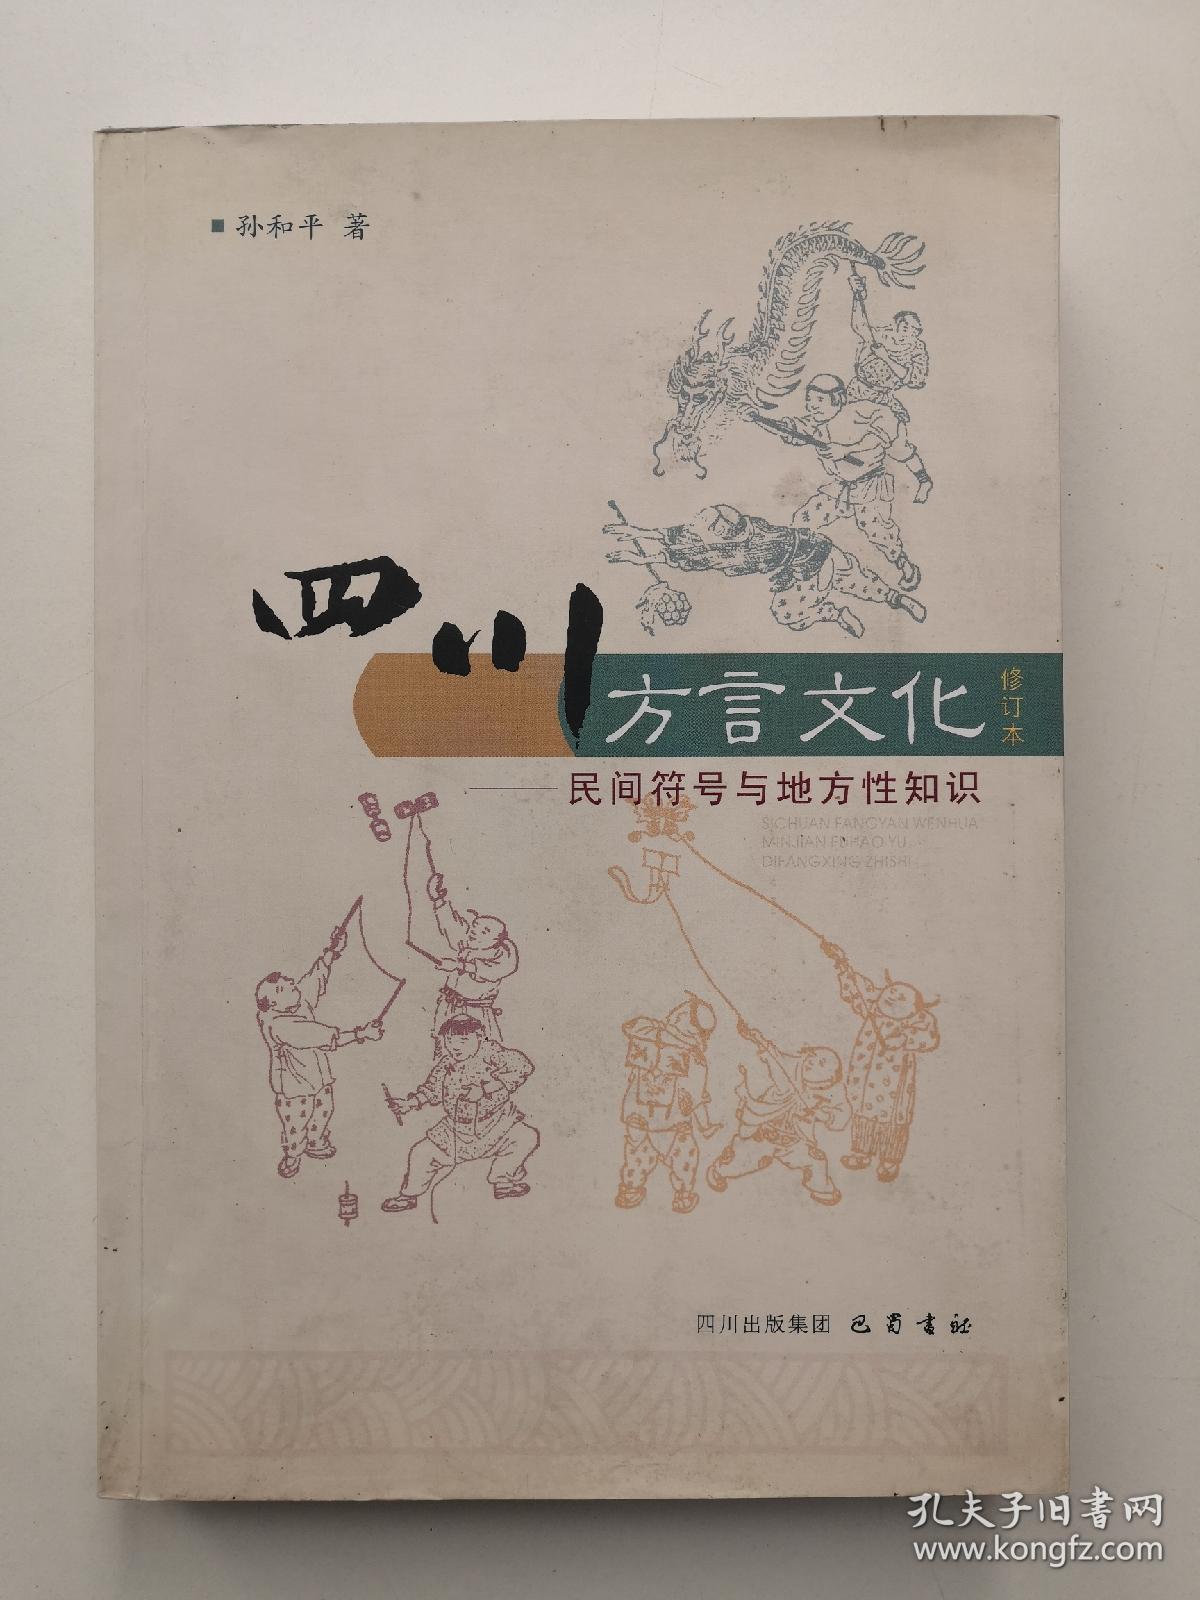 四川方言文化:民间符号与地方性知识(修订本)